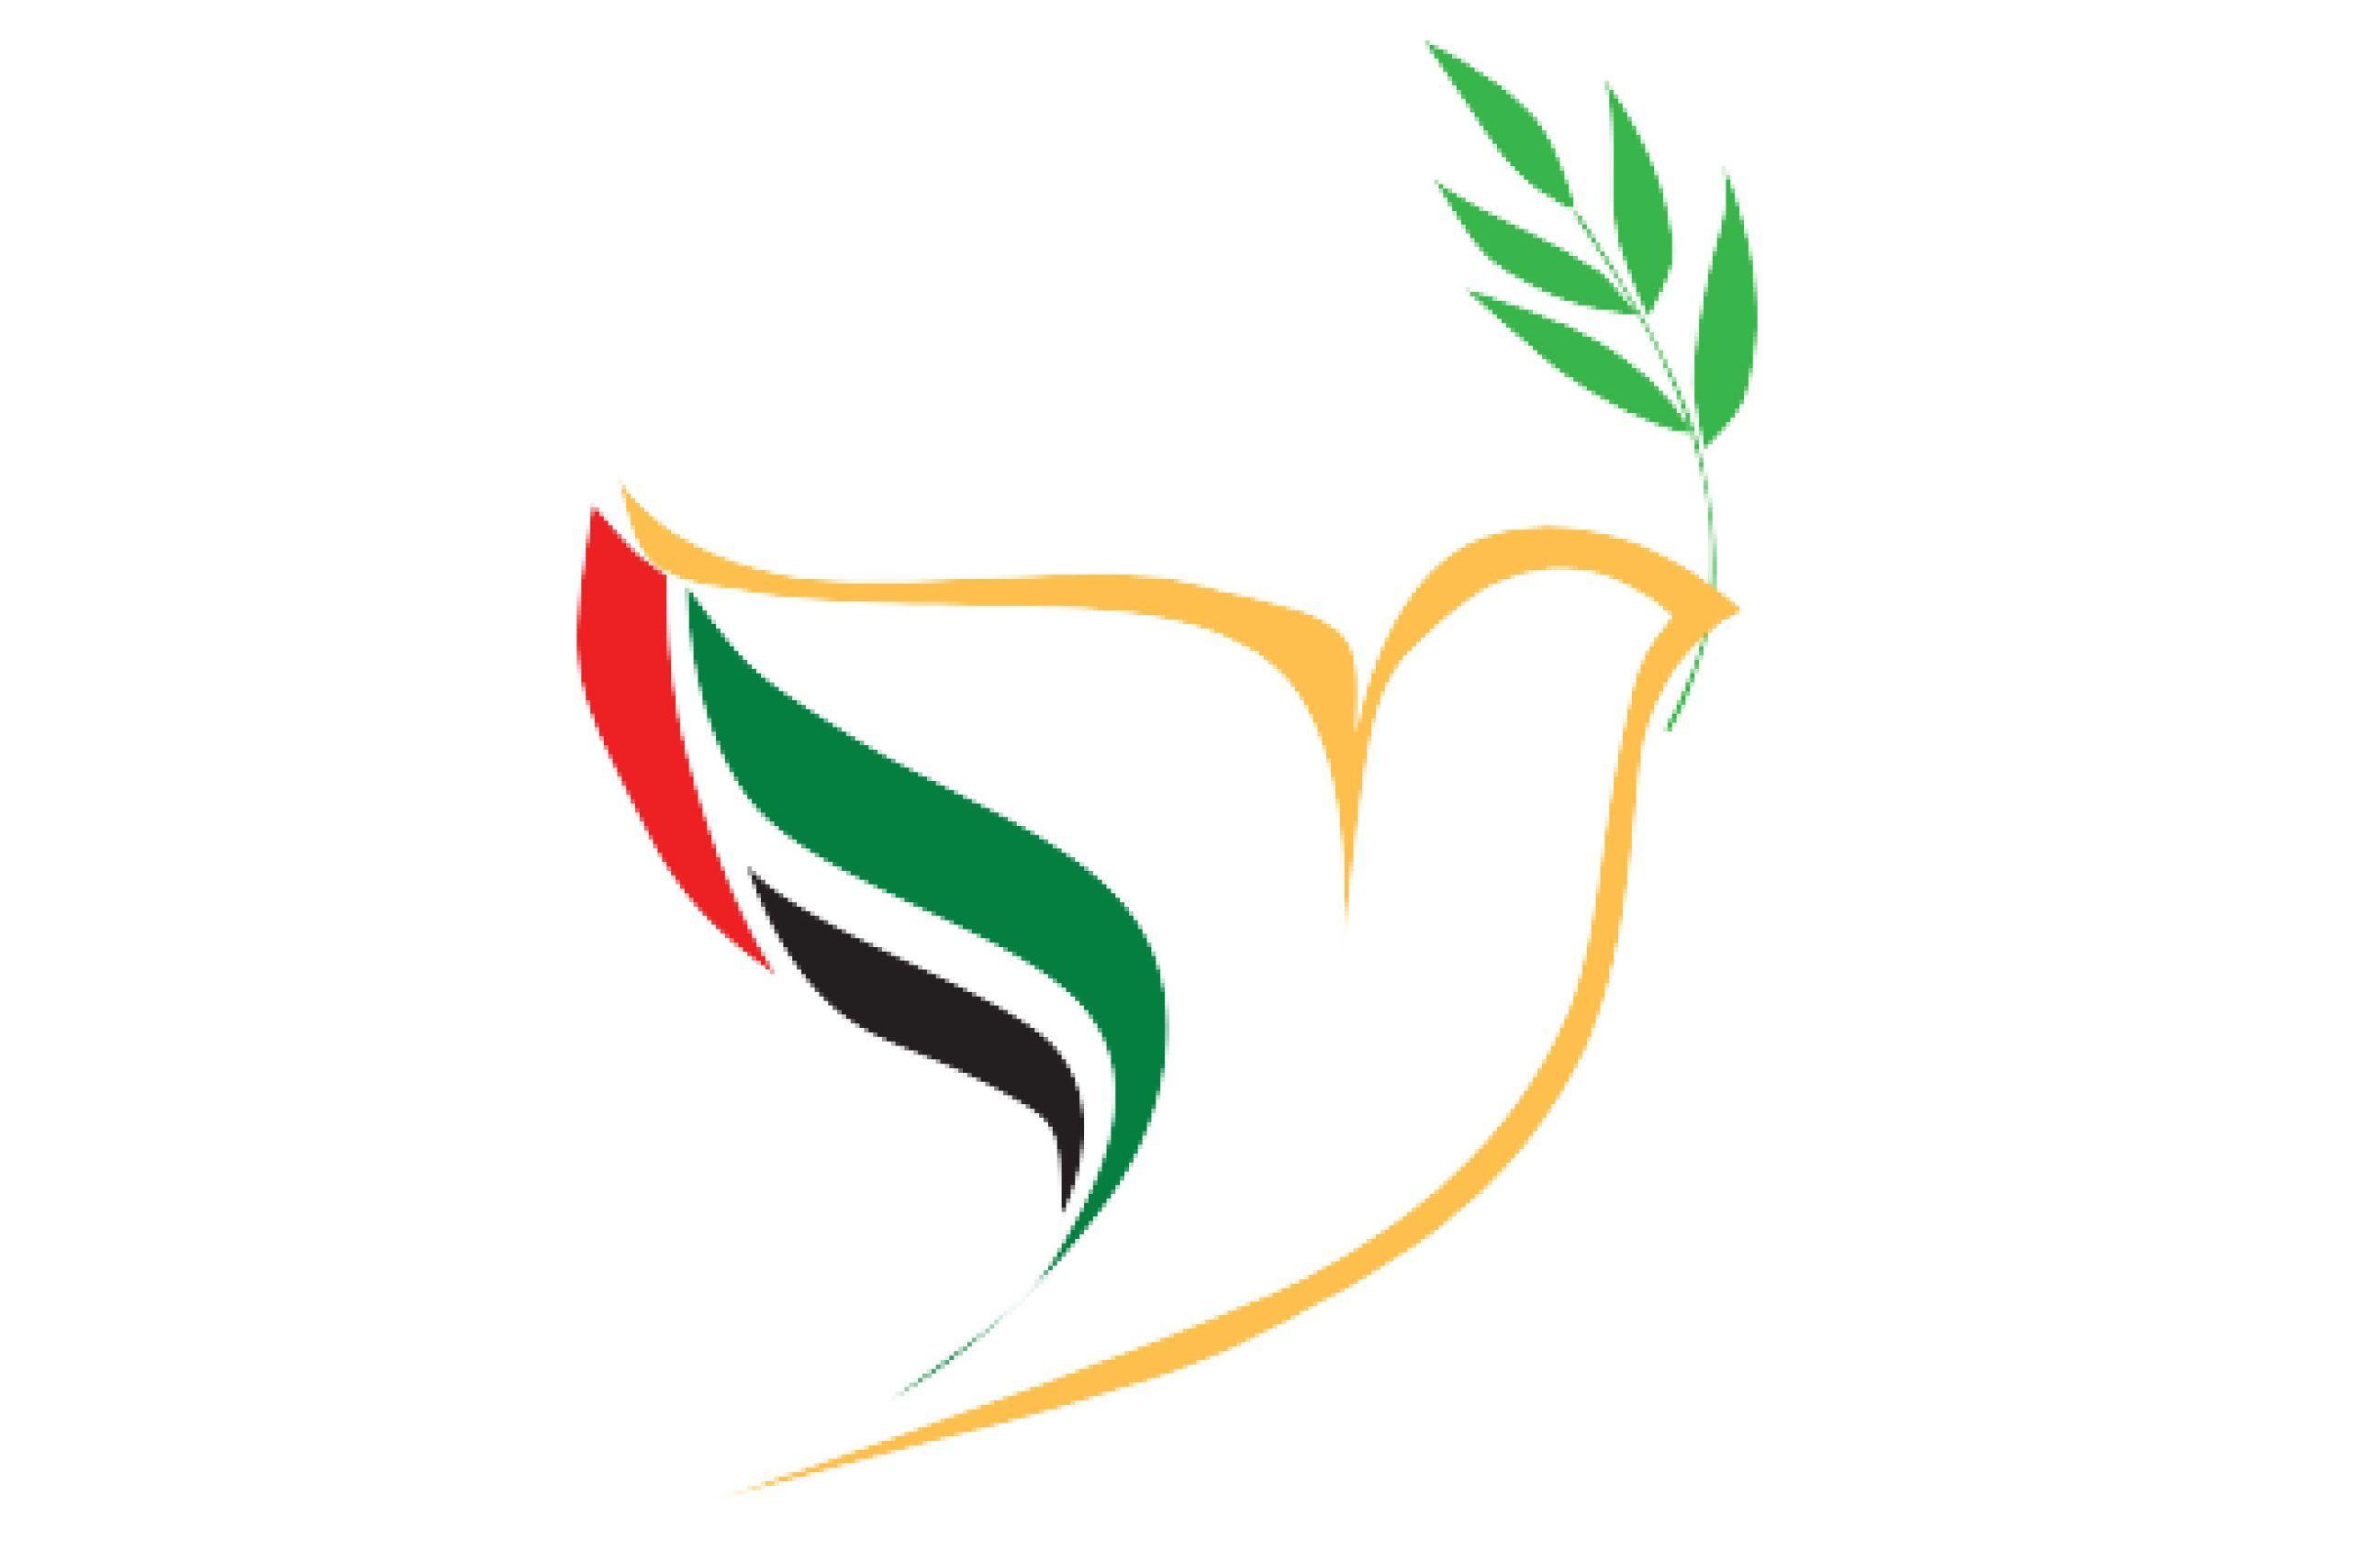 Papal Logo - LOGO PAPAL VISIT UNITED ARAB EMIRATES